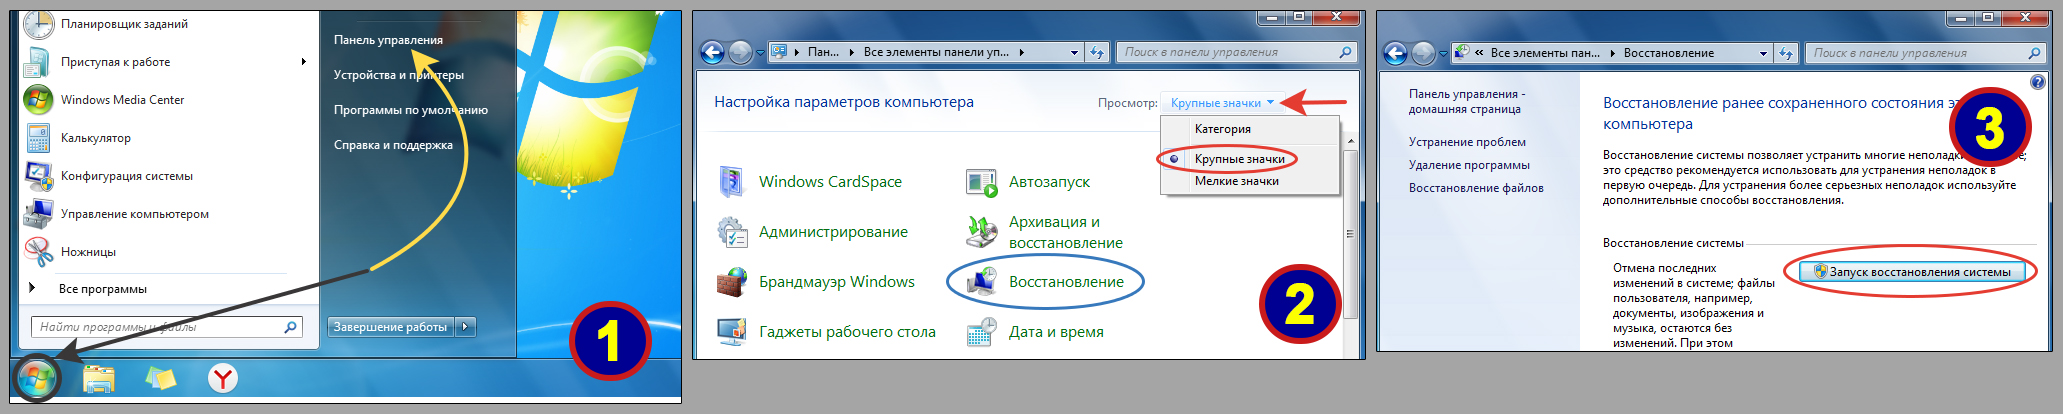 Как открыть восстановление Windows 7 с контрольной точки через панель управления.